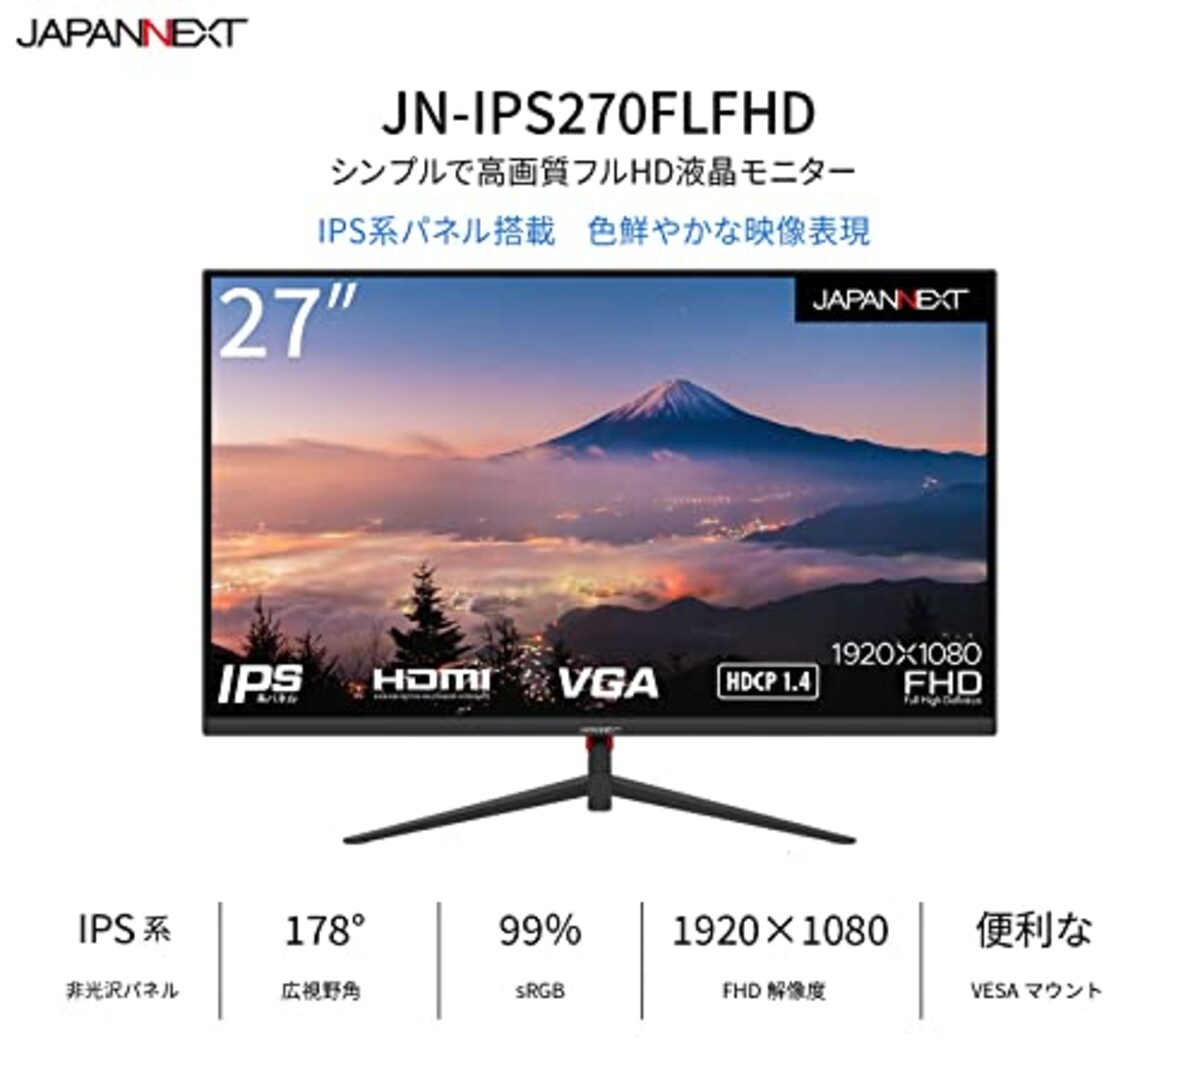  JAPANNEXT 27インチIPSパネル搭載 フルHD液晶モニター JN-IPS270FLFHD HDMI VGA画像2 